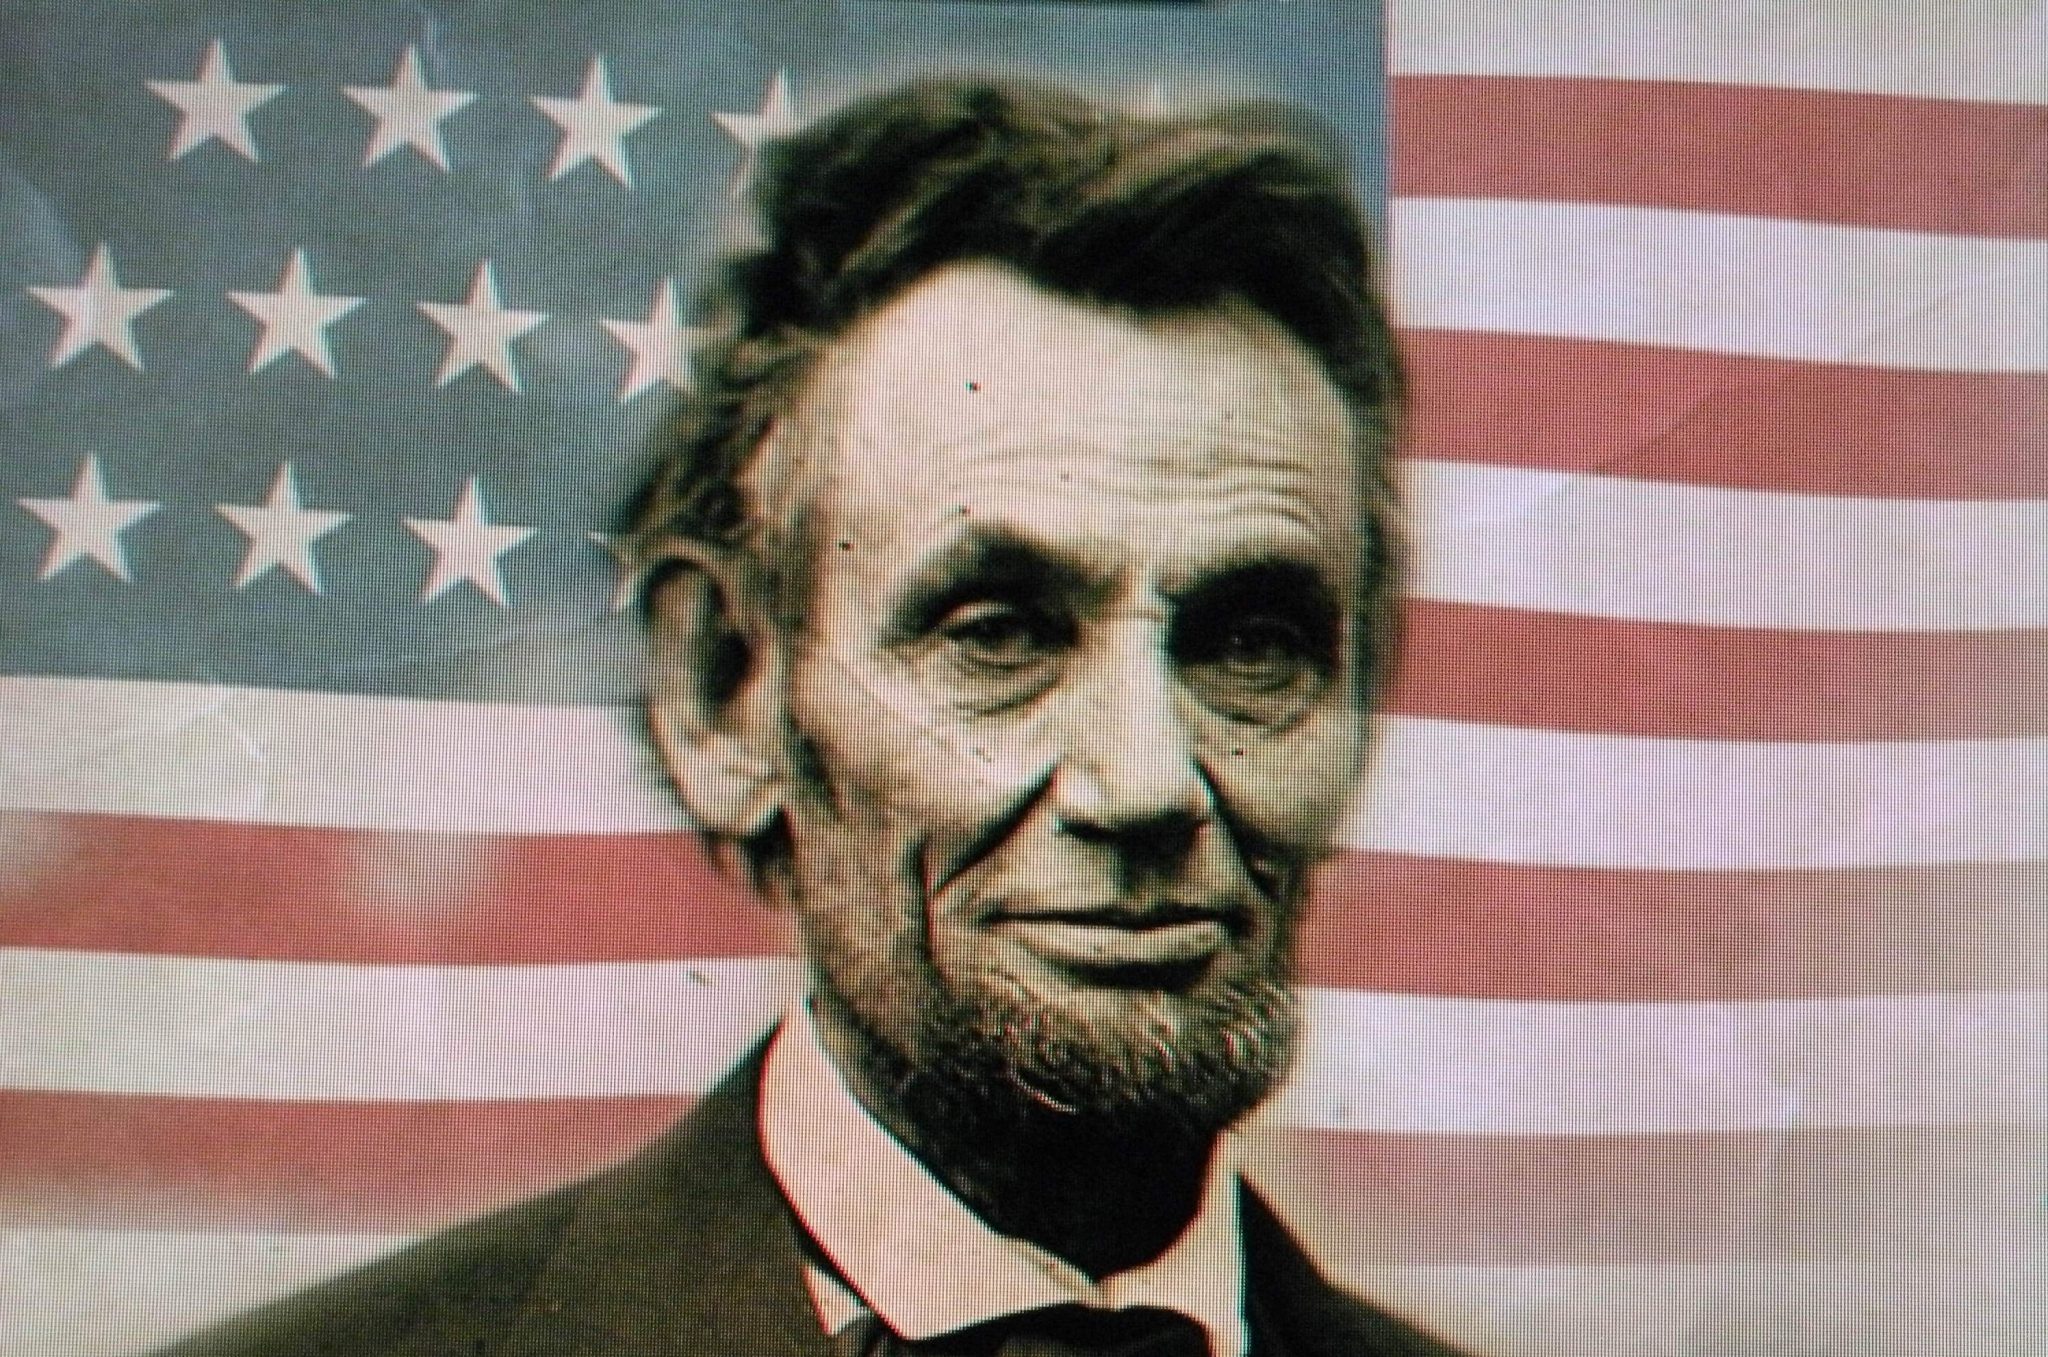 Президент америки линкольн фото